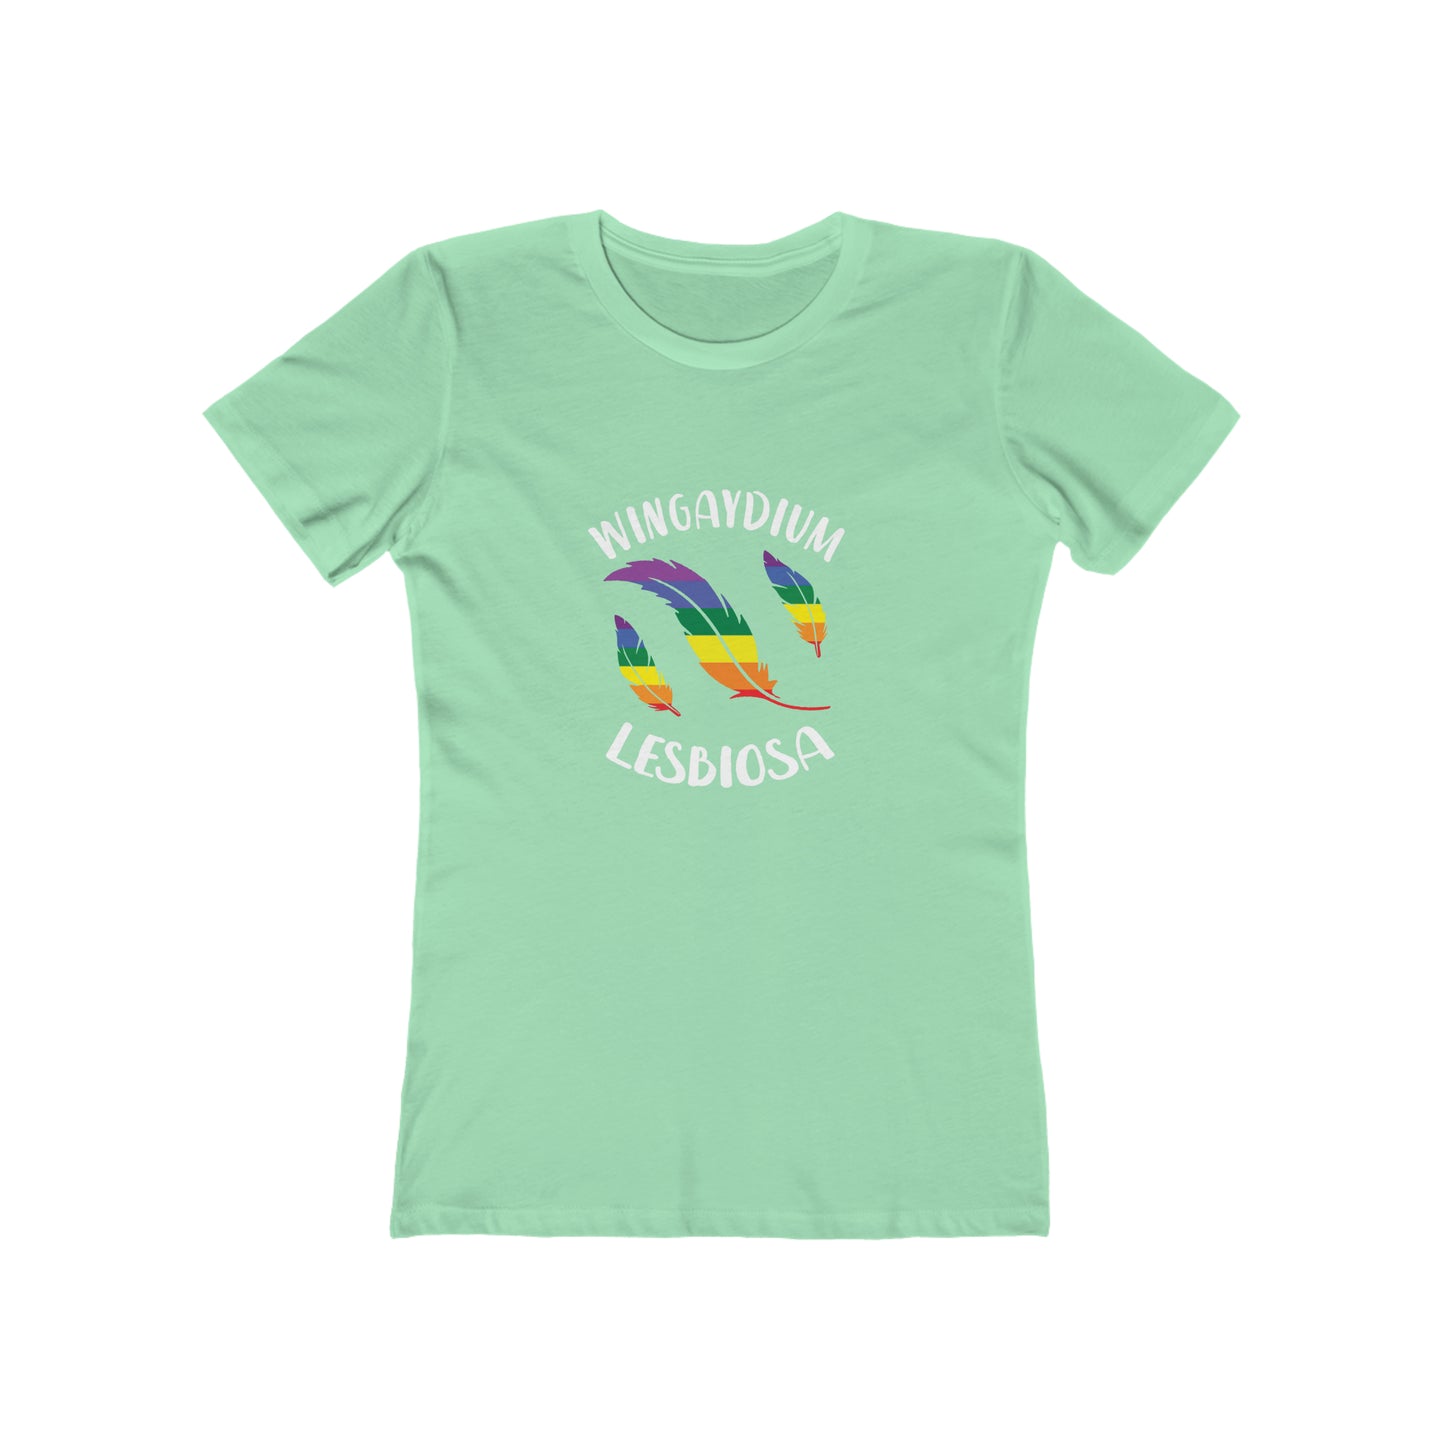 Wingaydium Lesbiosa - Women's T-shirt